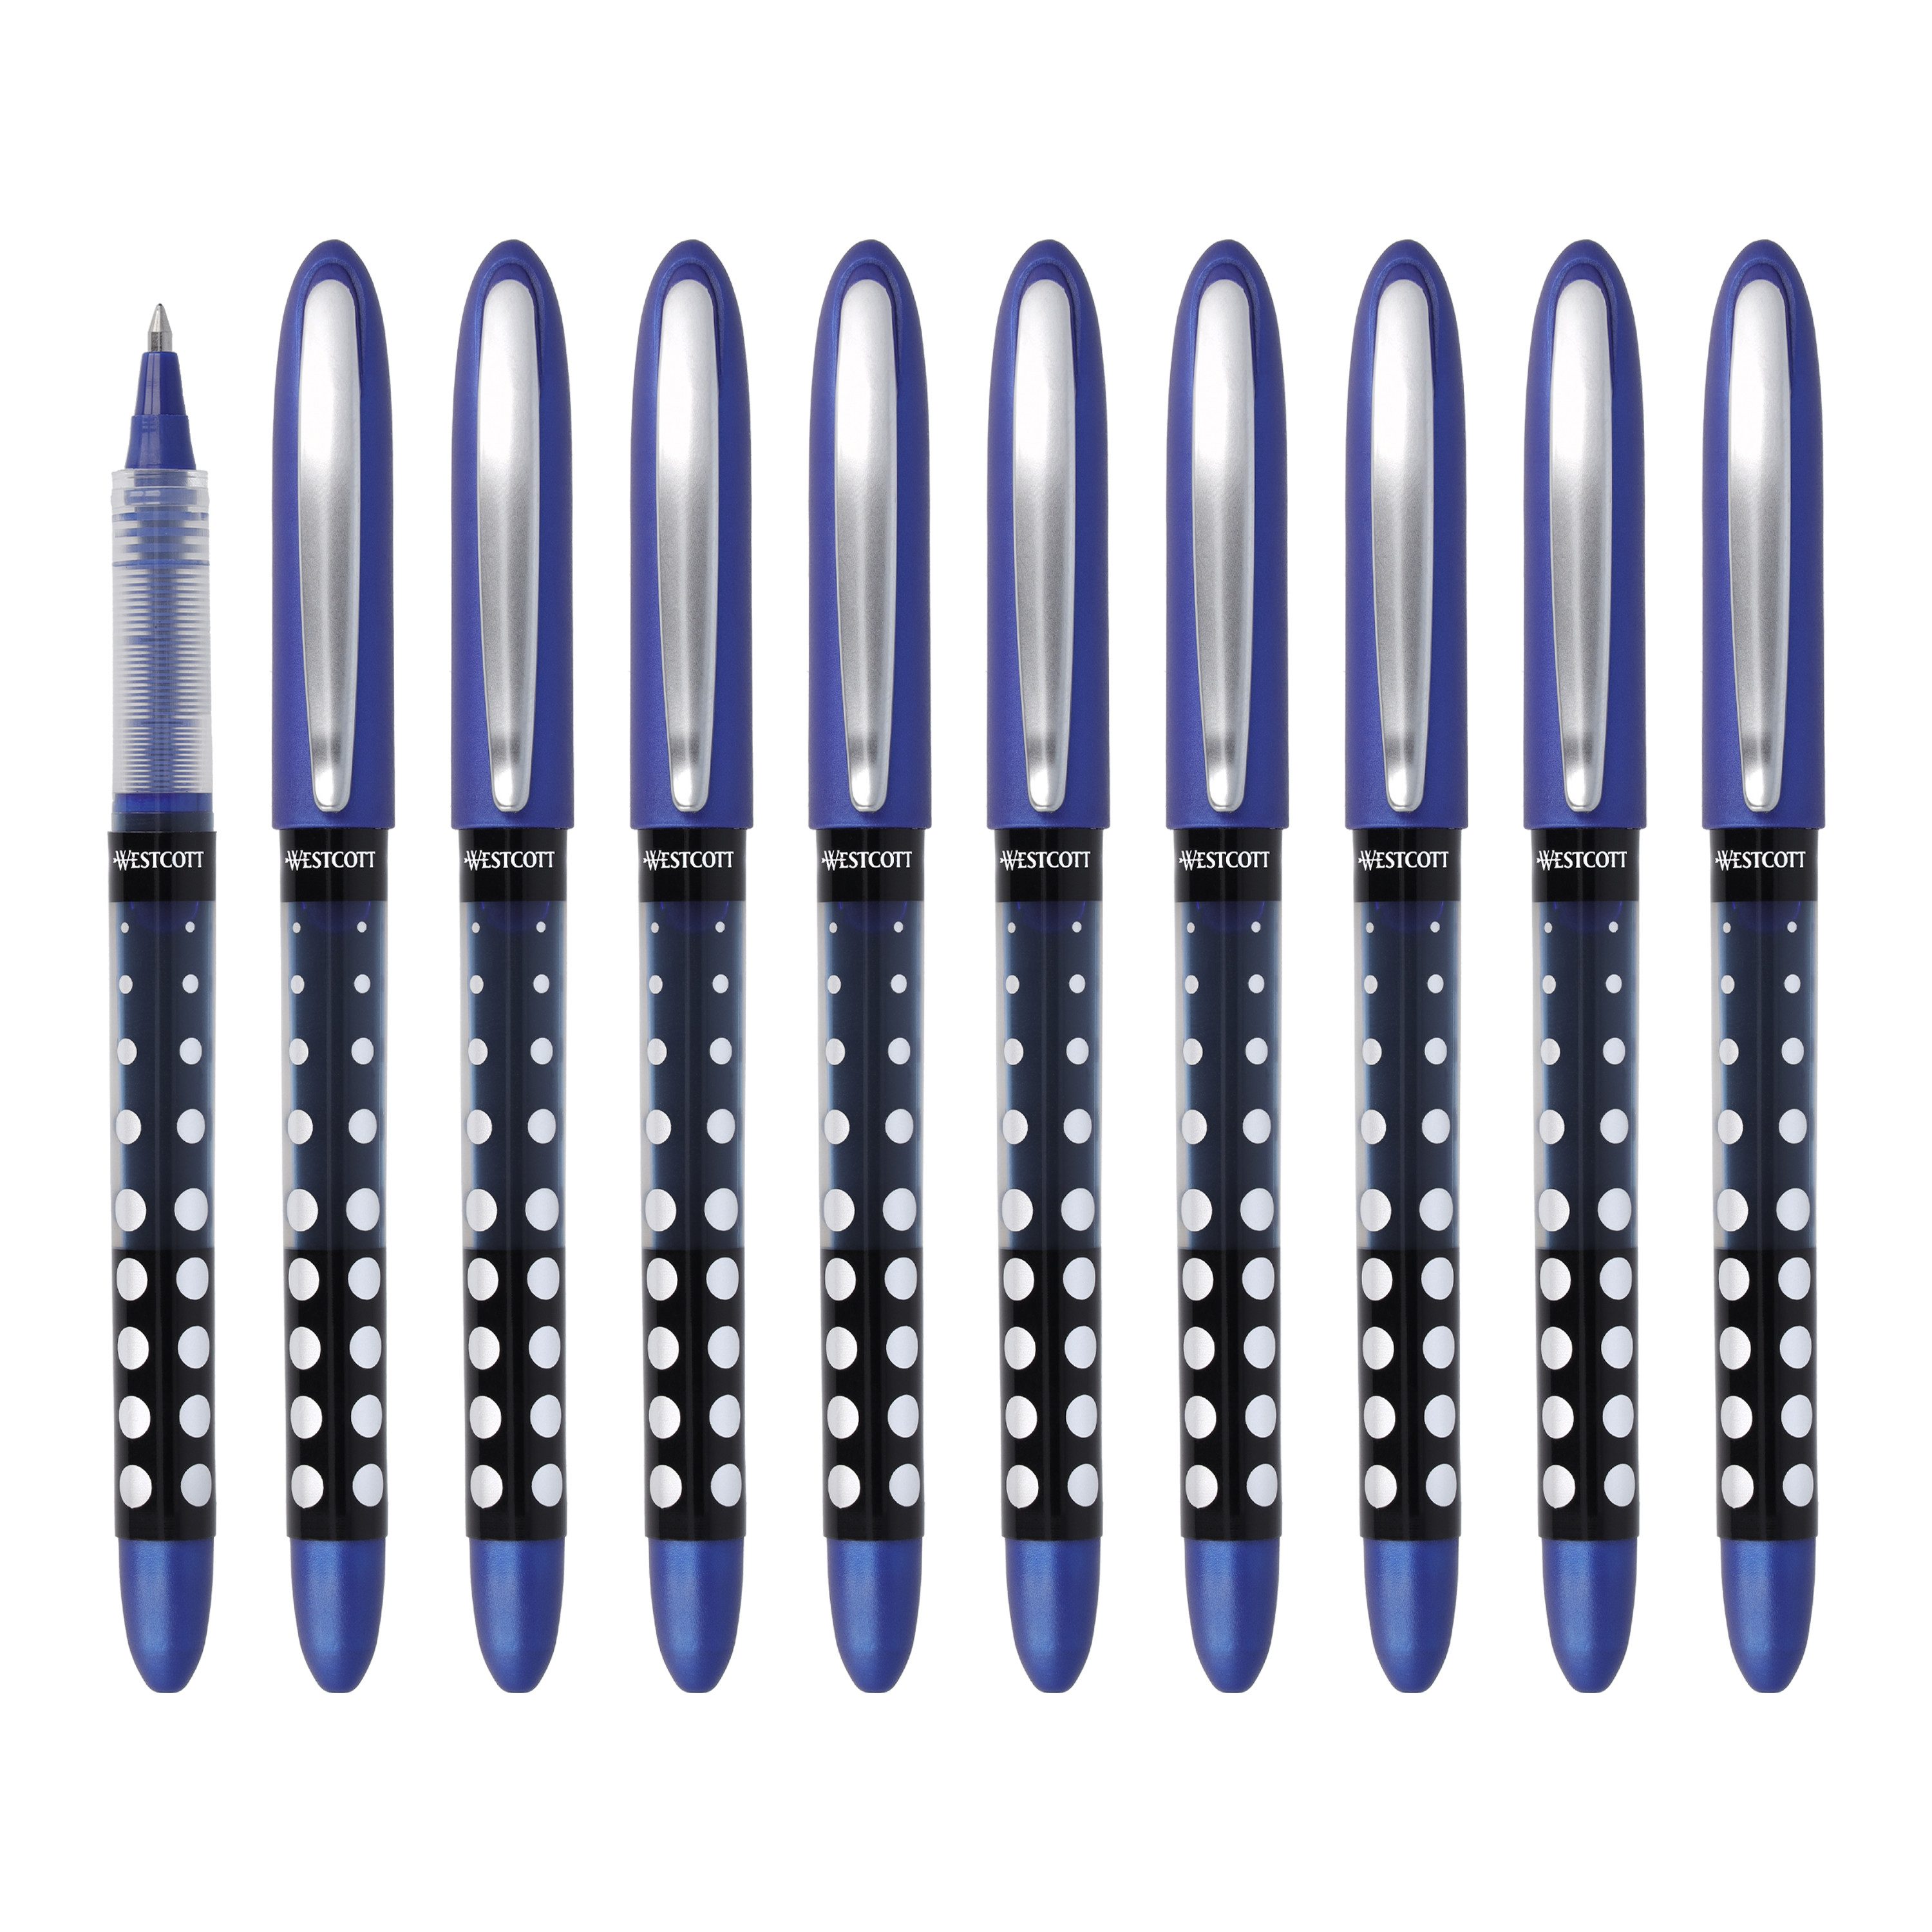 WESTCOTT Tintenroller Blau 10 Stück, Rollerball Pen mit blauer Tinte, 0,5 mm Strichstärke, (Vorteilspack, 10-tlg), transp. Füllstandsanzeige, Kapillartechnologie, ergonomischer Griff